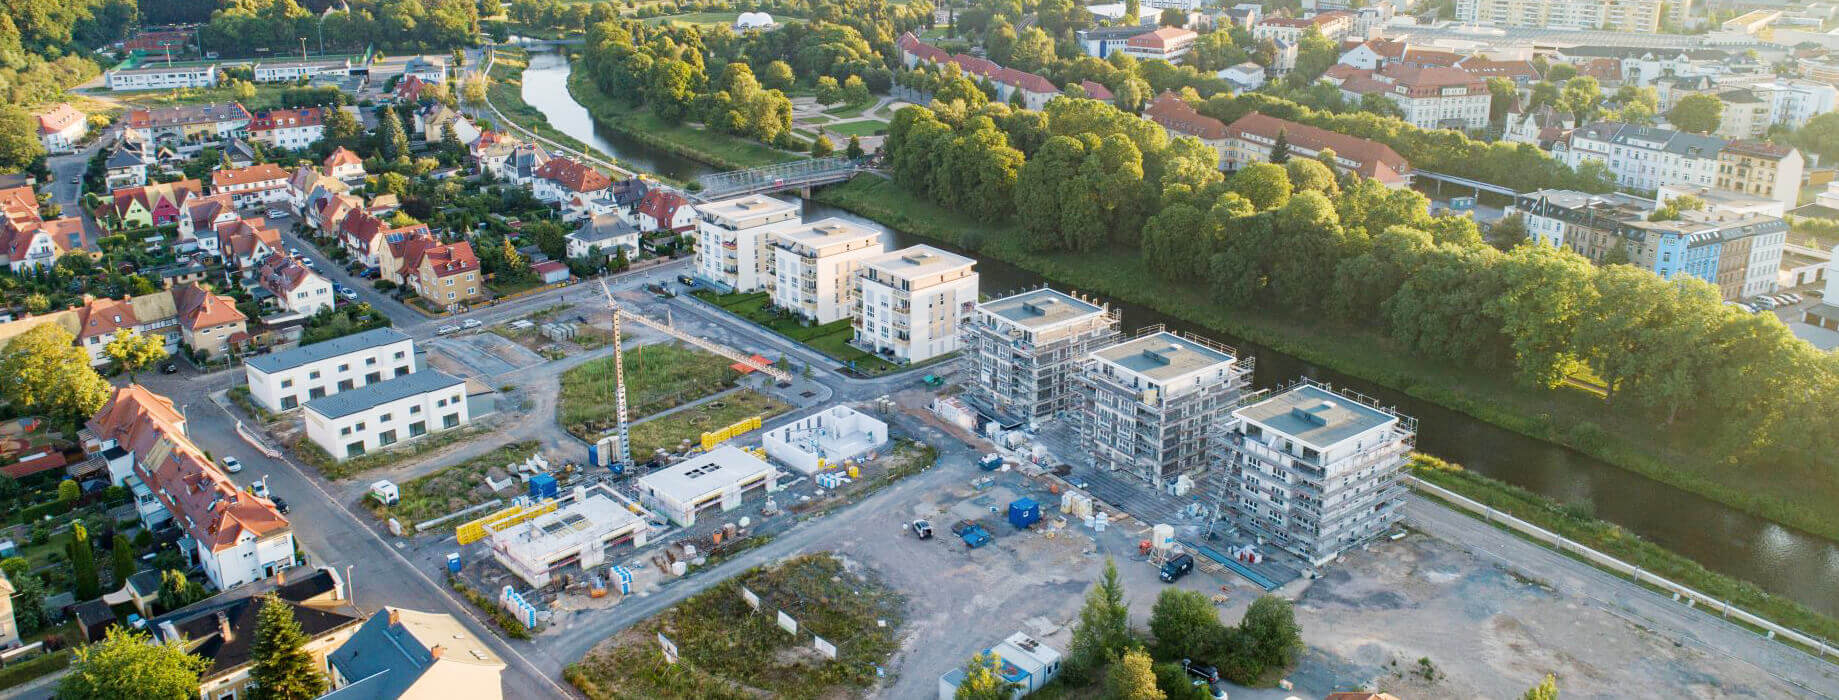 Das Neubaugebiet HeinrichsQuartier in Gera